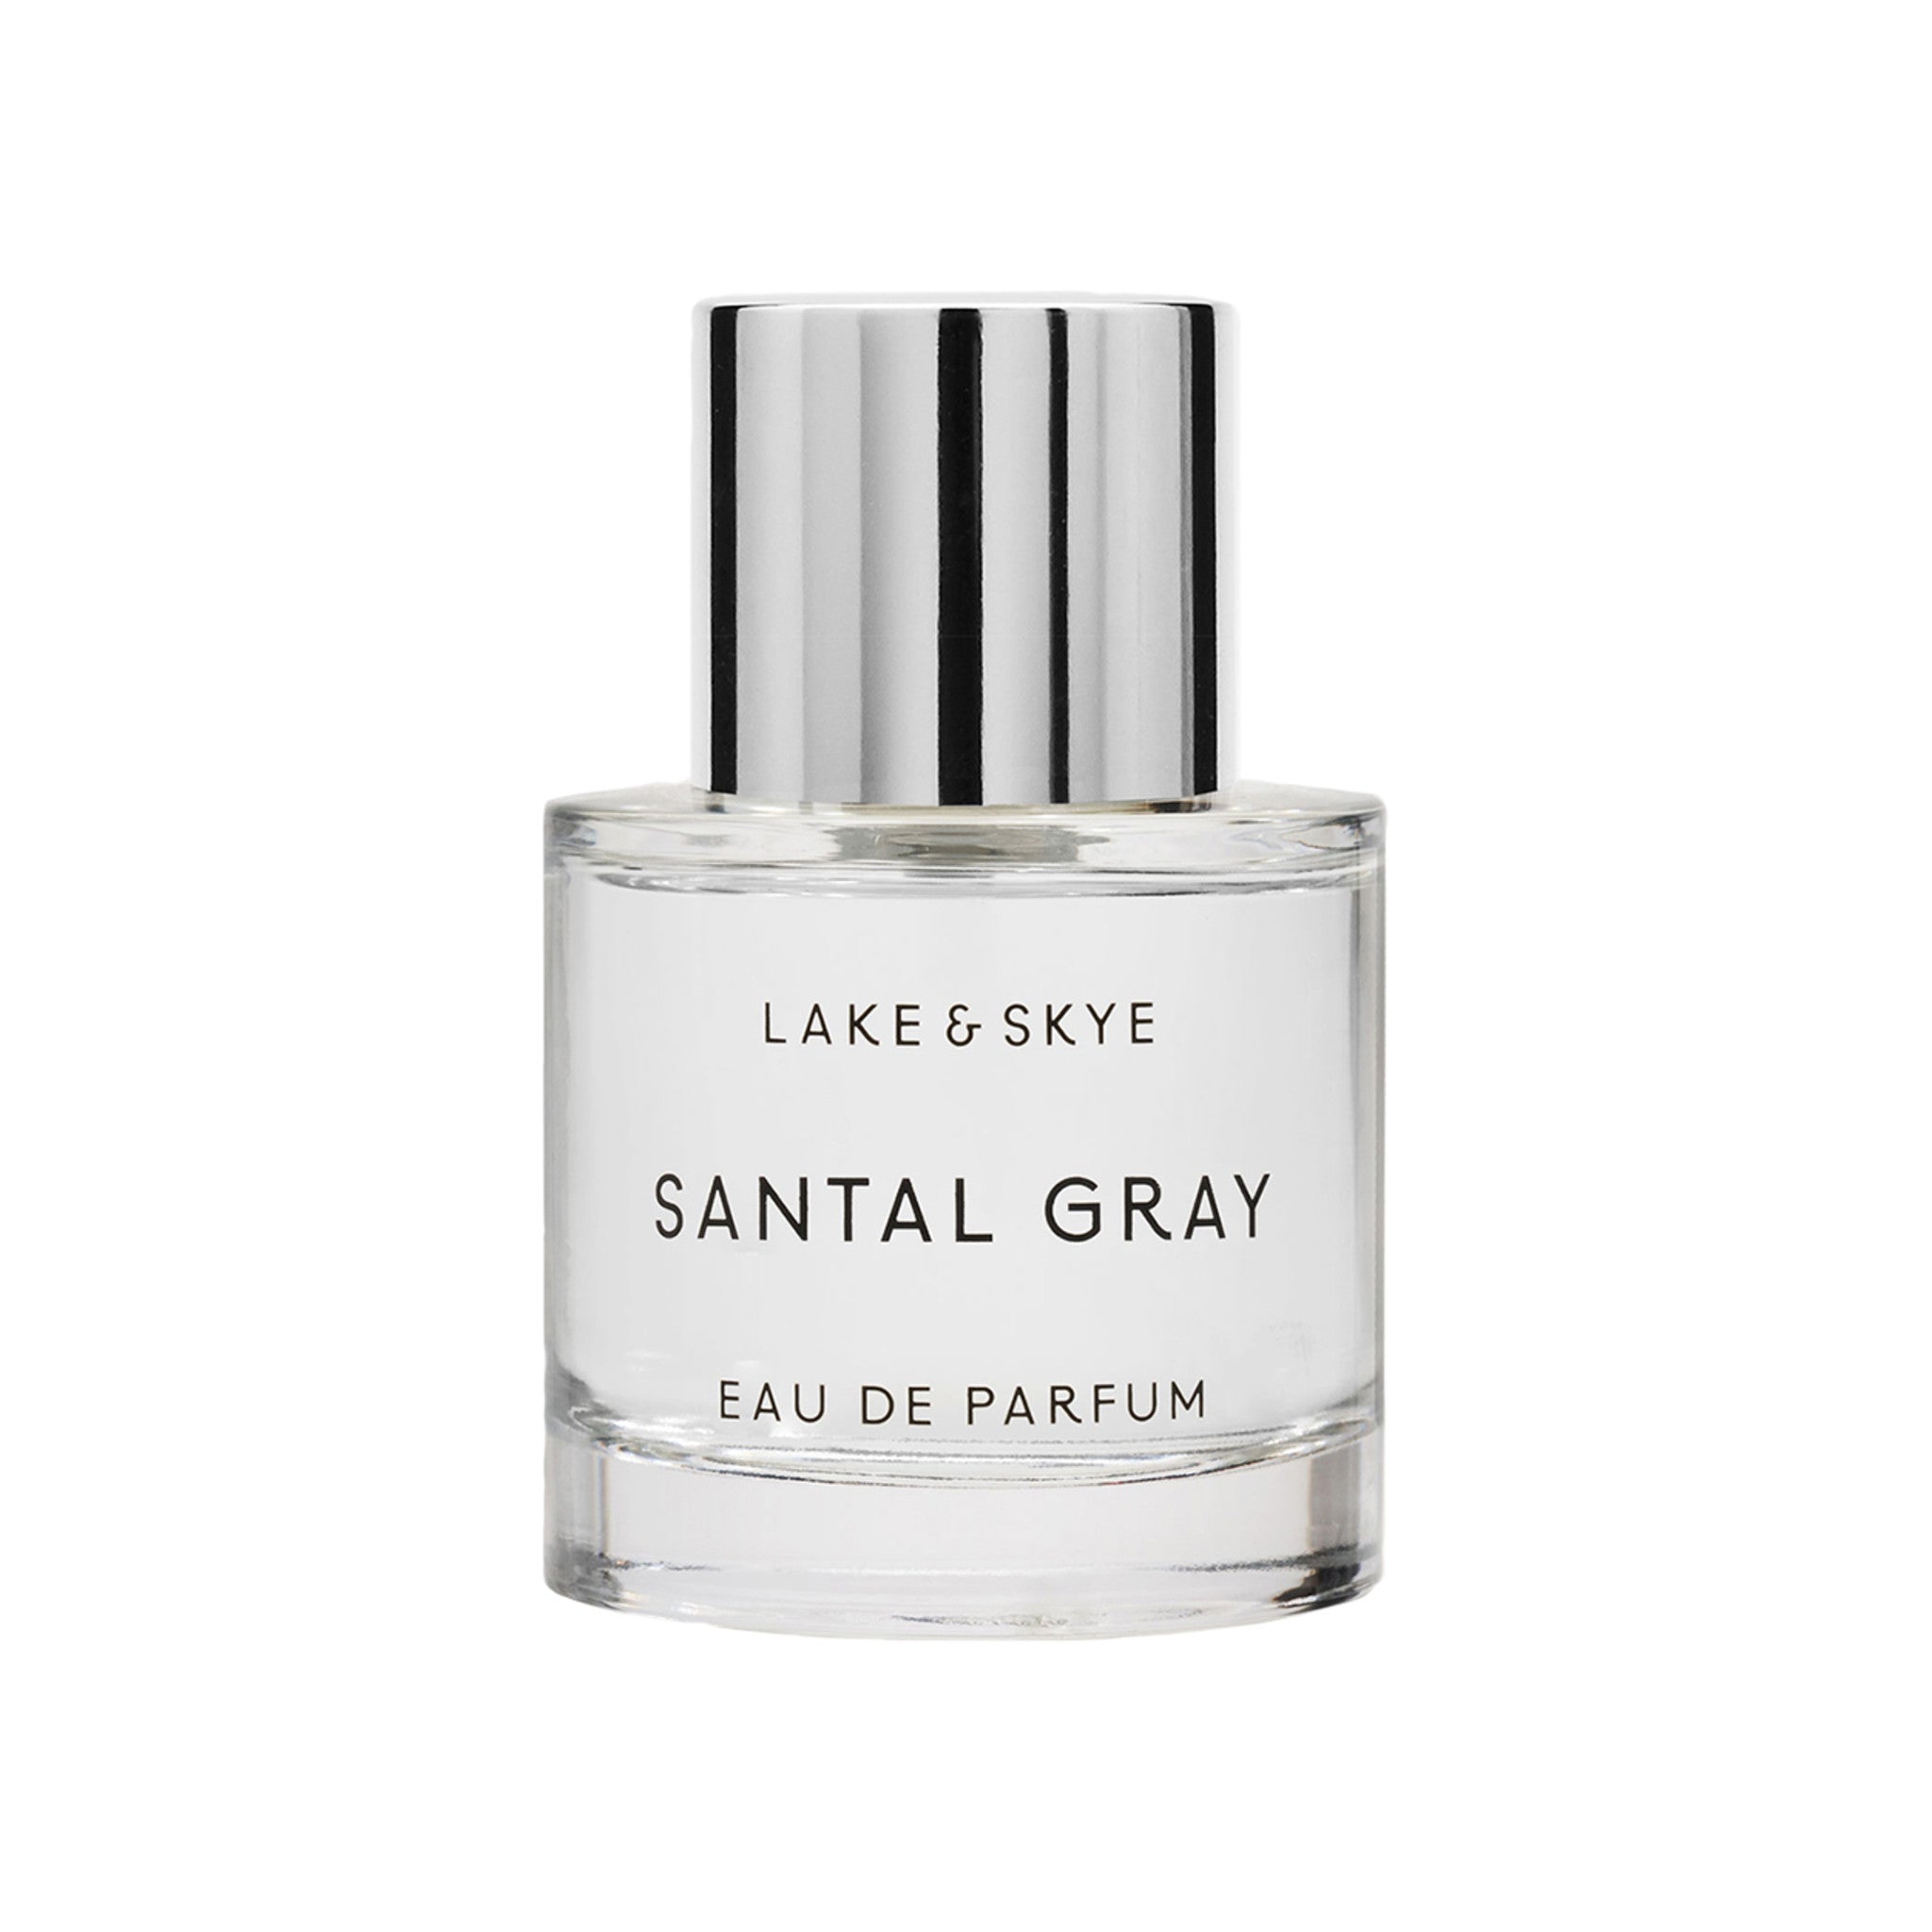 Santal Gray Eau de Parfum main image.